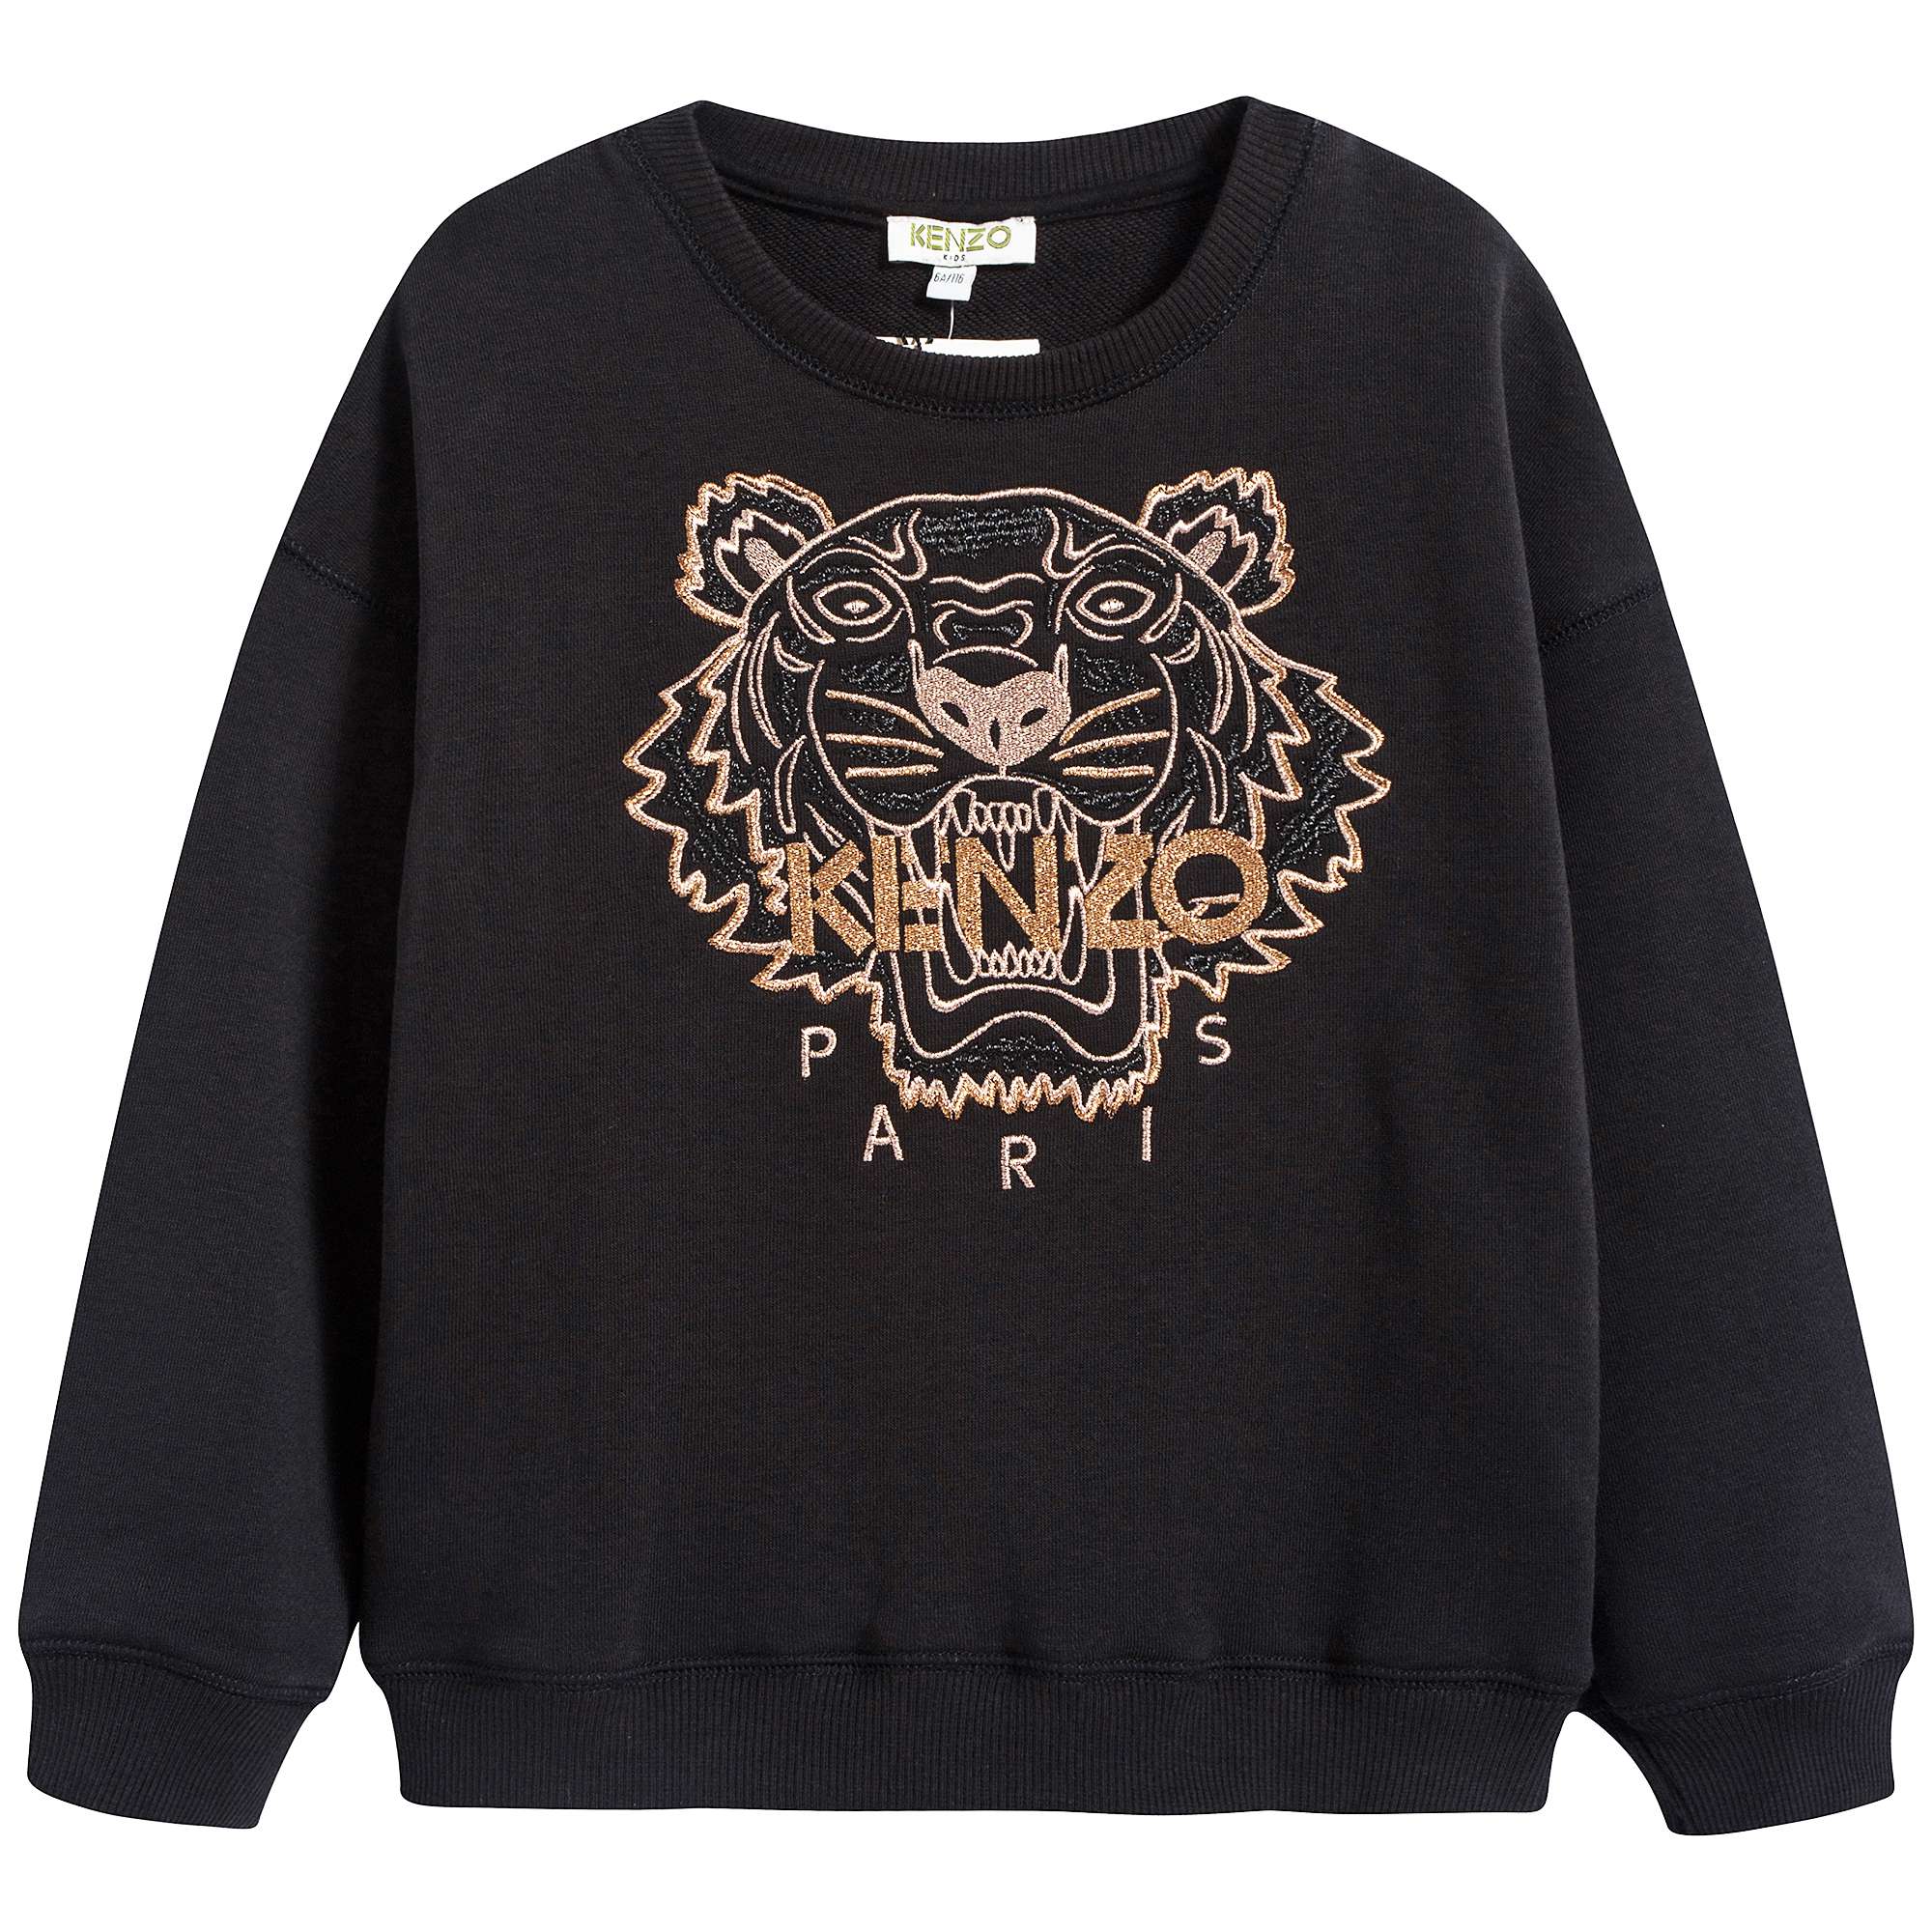 Girls Black Tiger Printed Cotton Sweatshirt